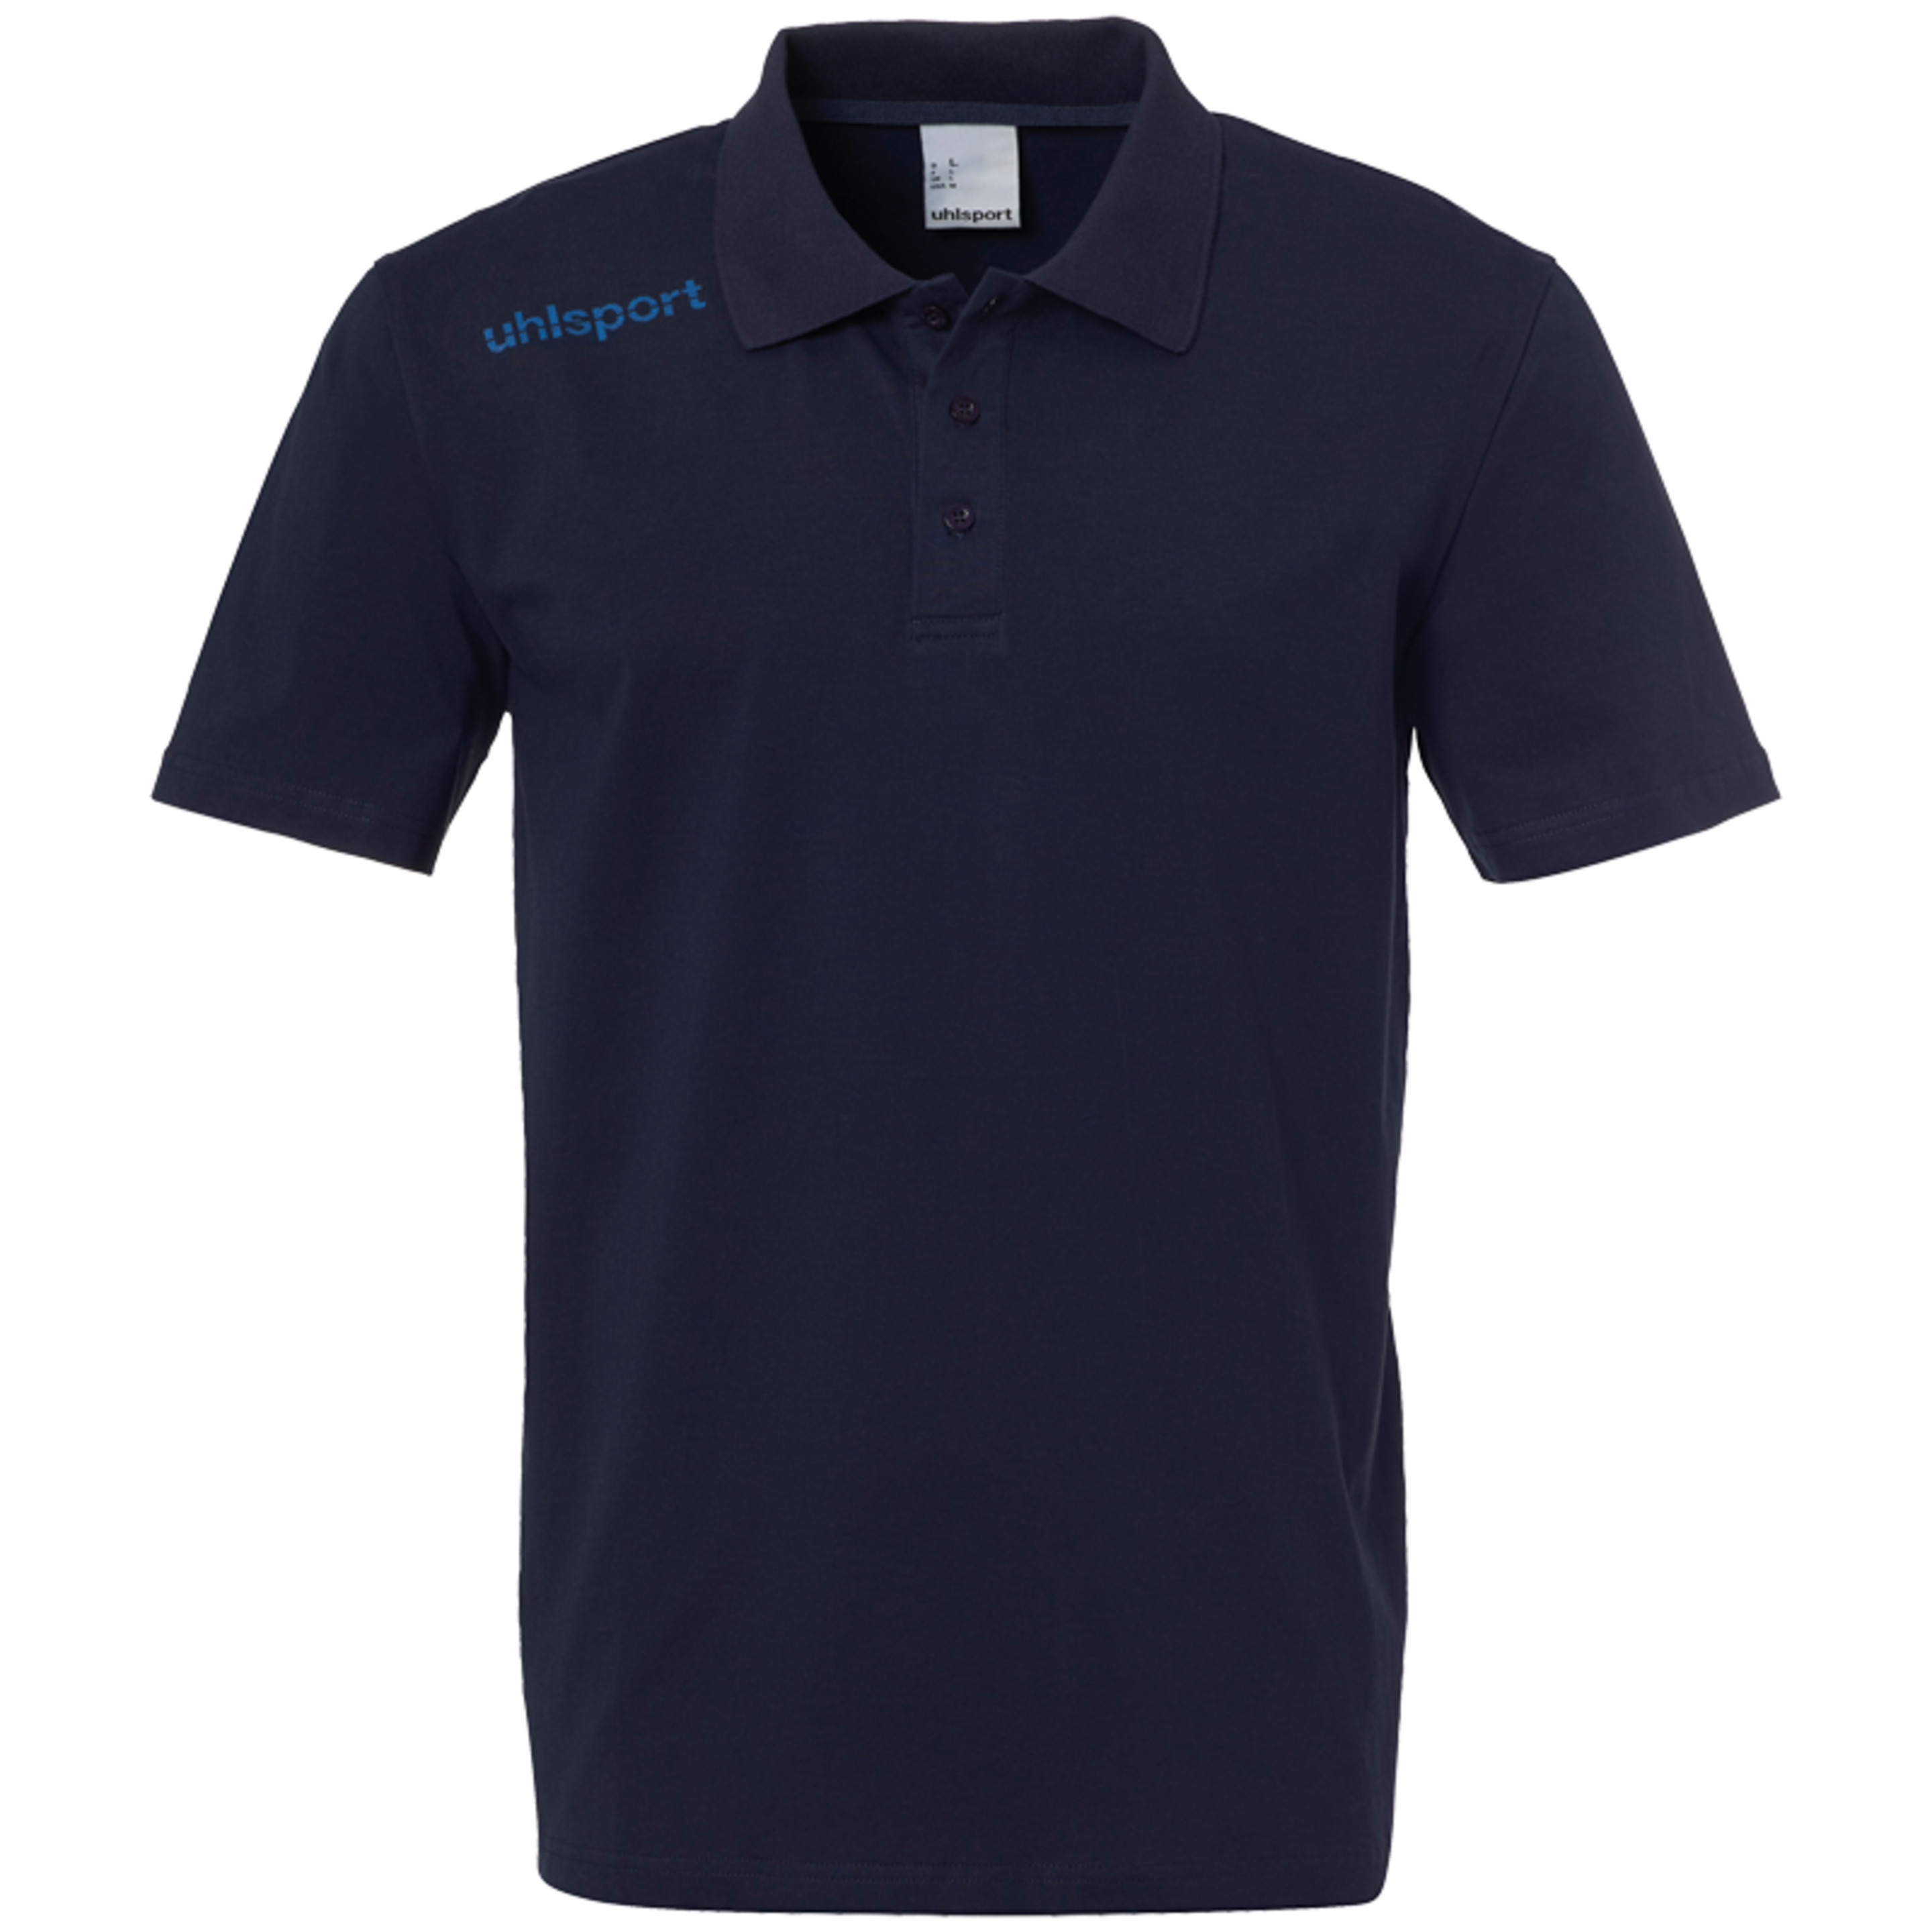 Essential Polo Shirt Blue Uhlsport